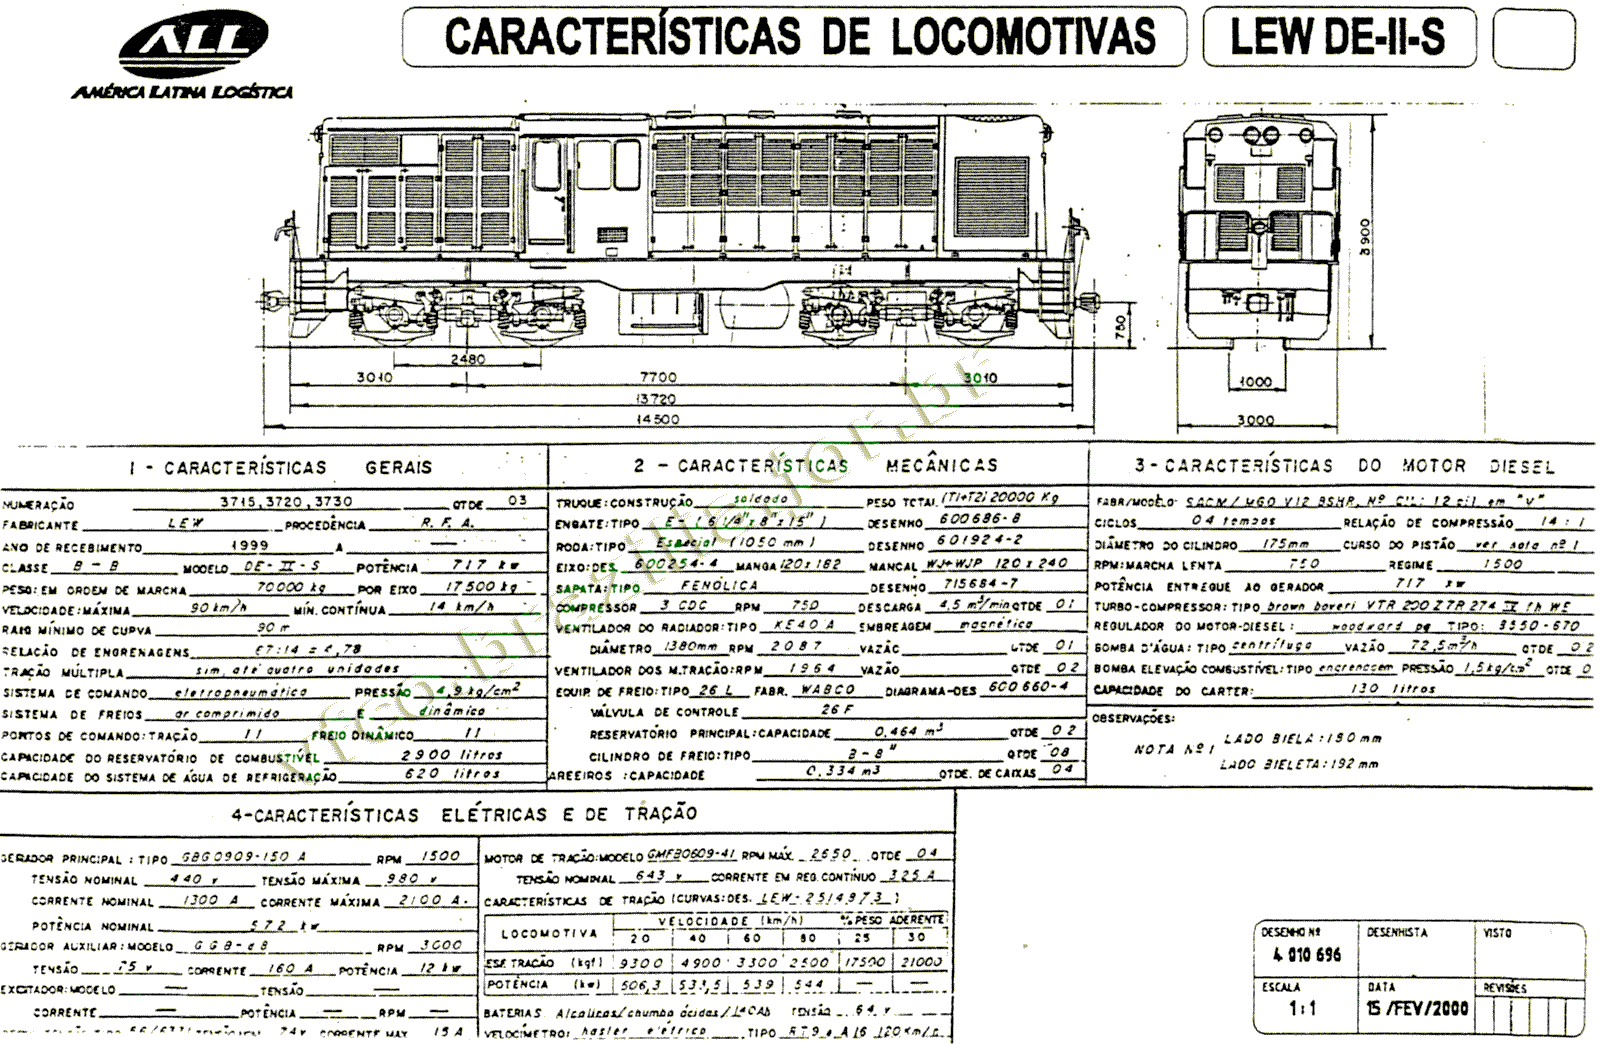 Desenho, medidas e características da Locomotiva LEW DE-II S da ferrovia ALL